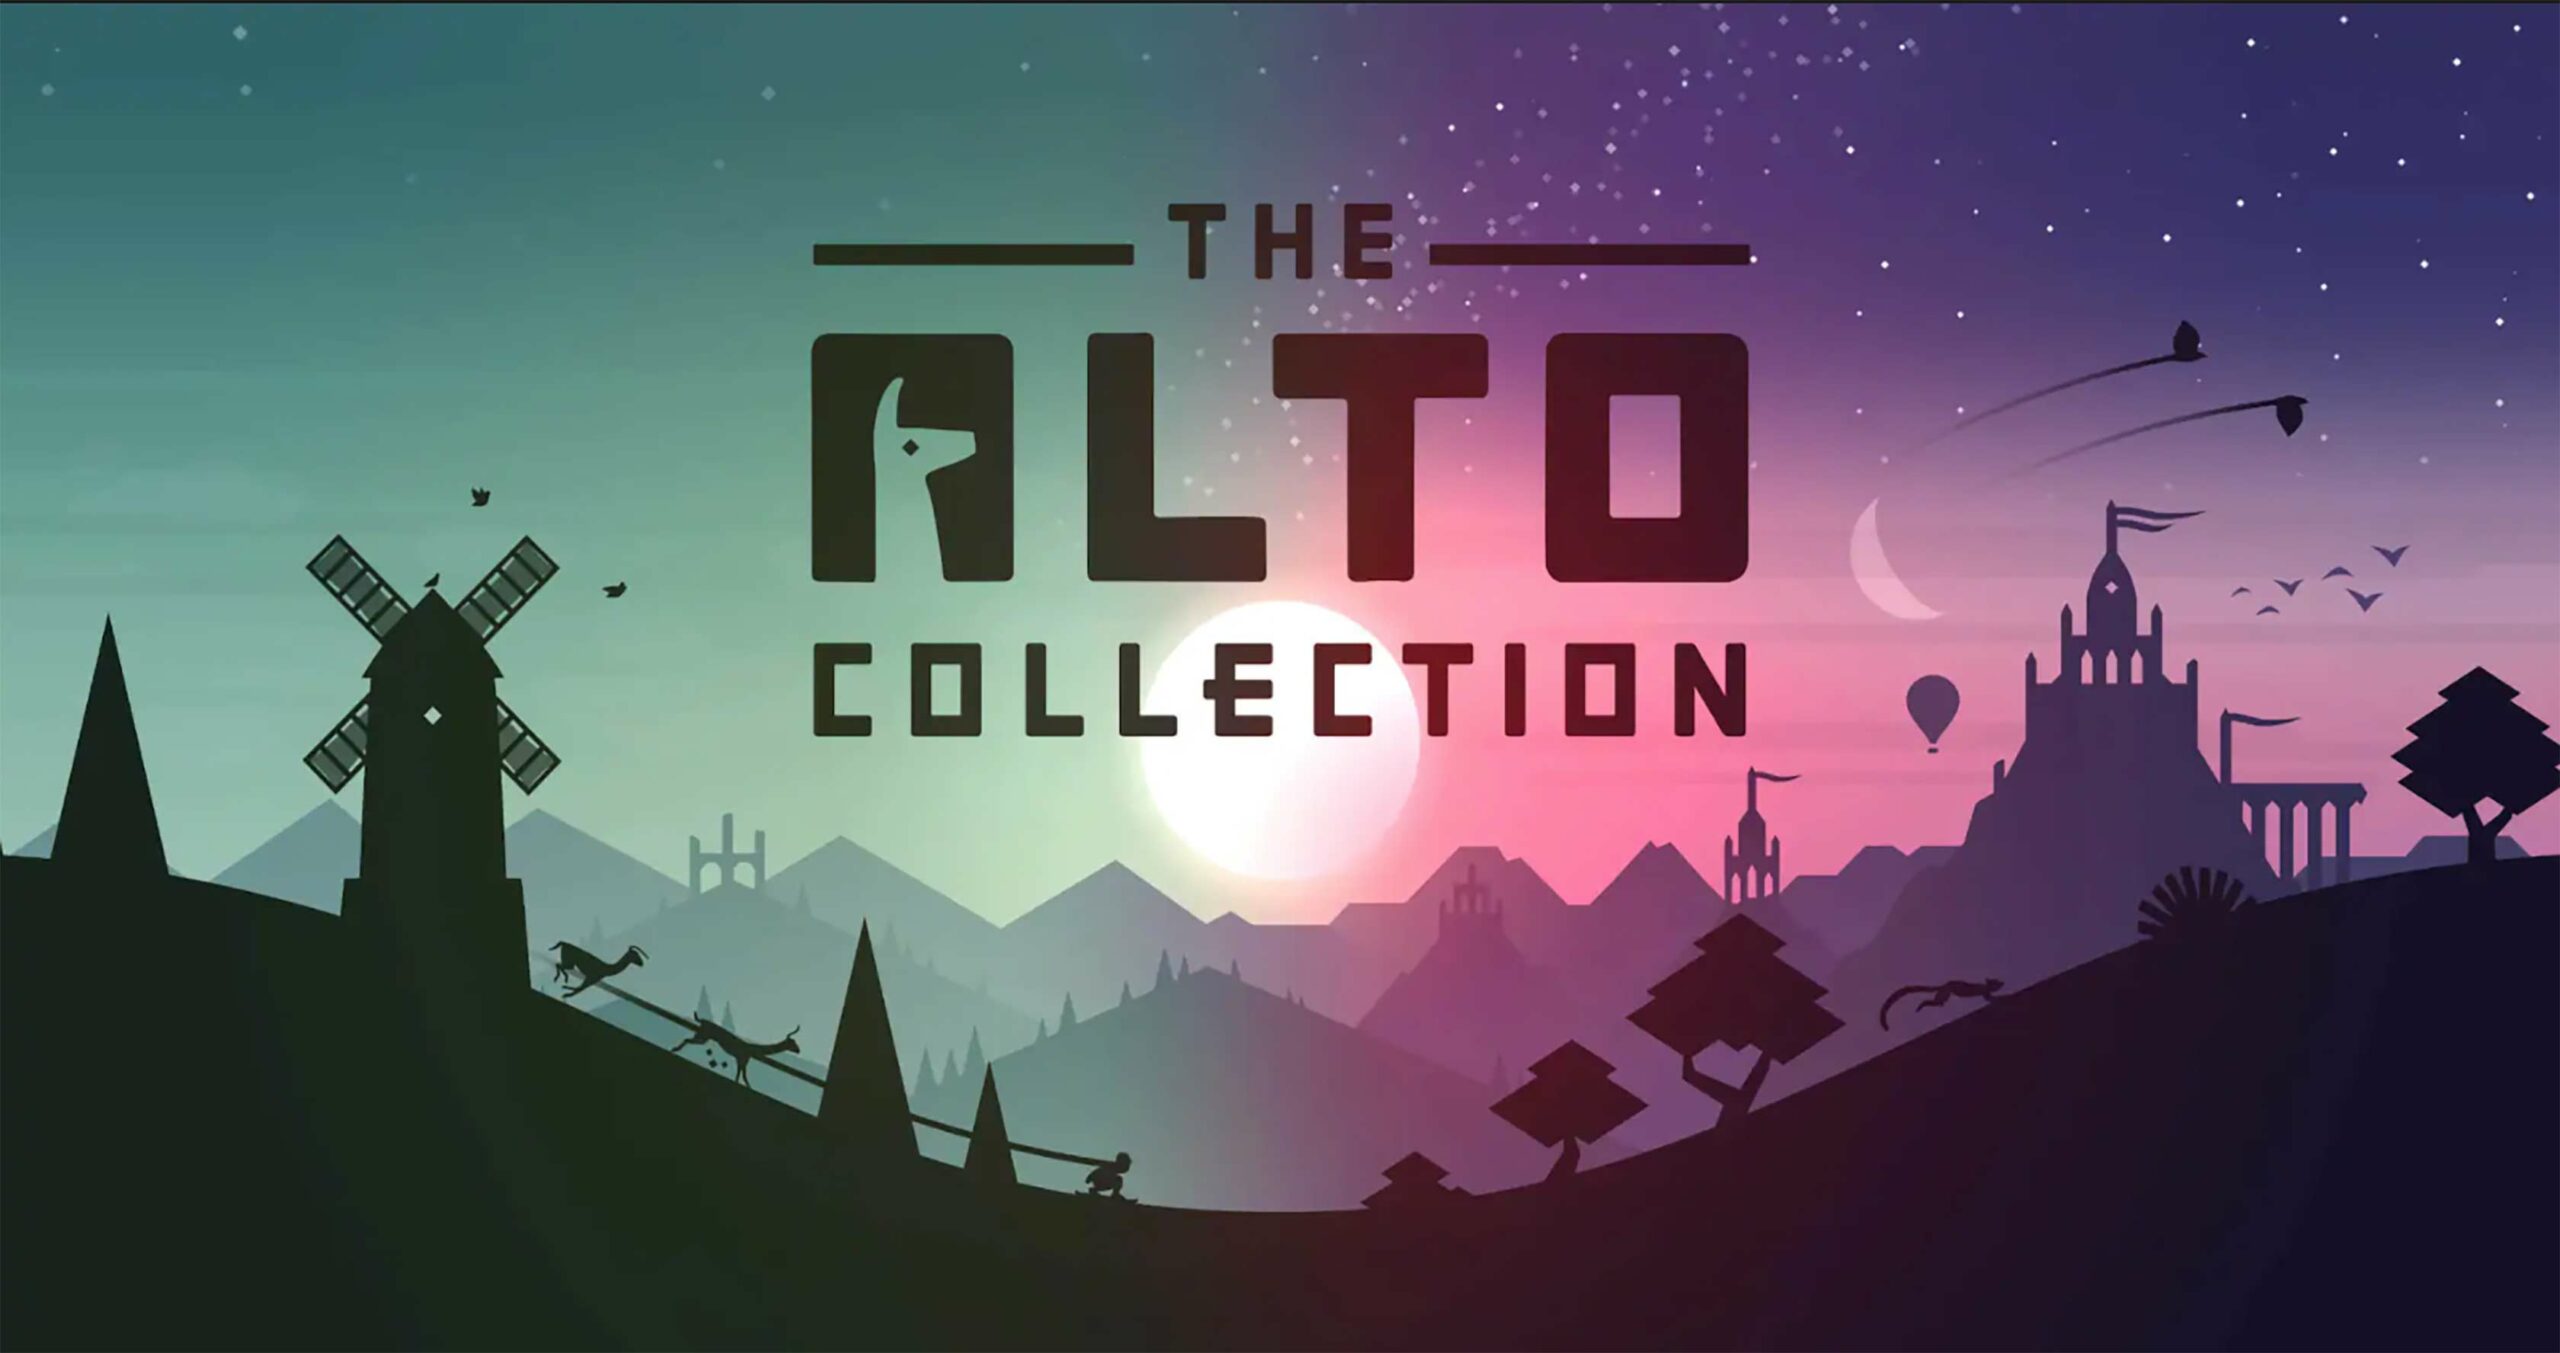 The Alto Collection